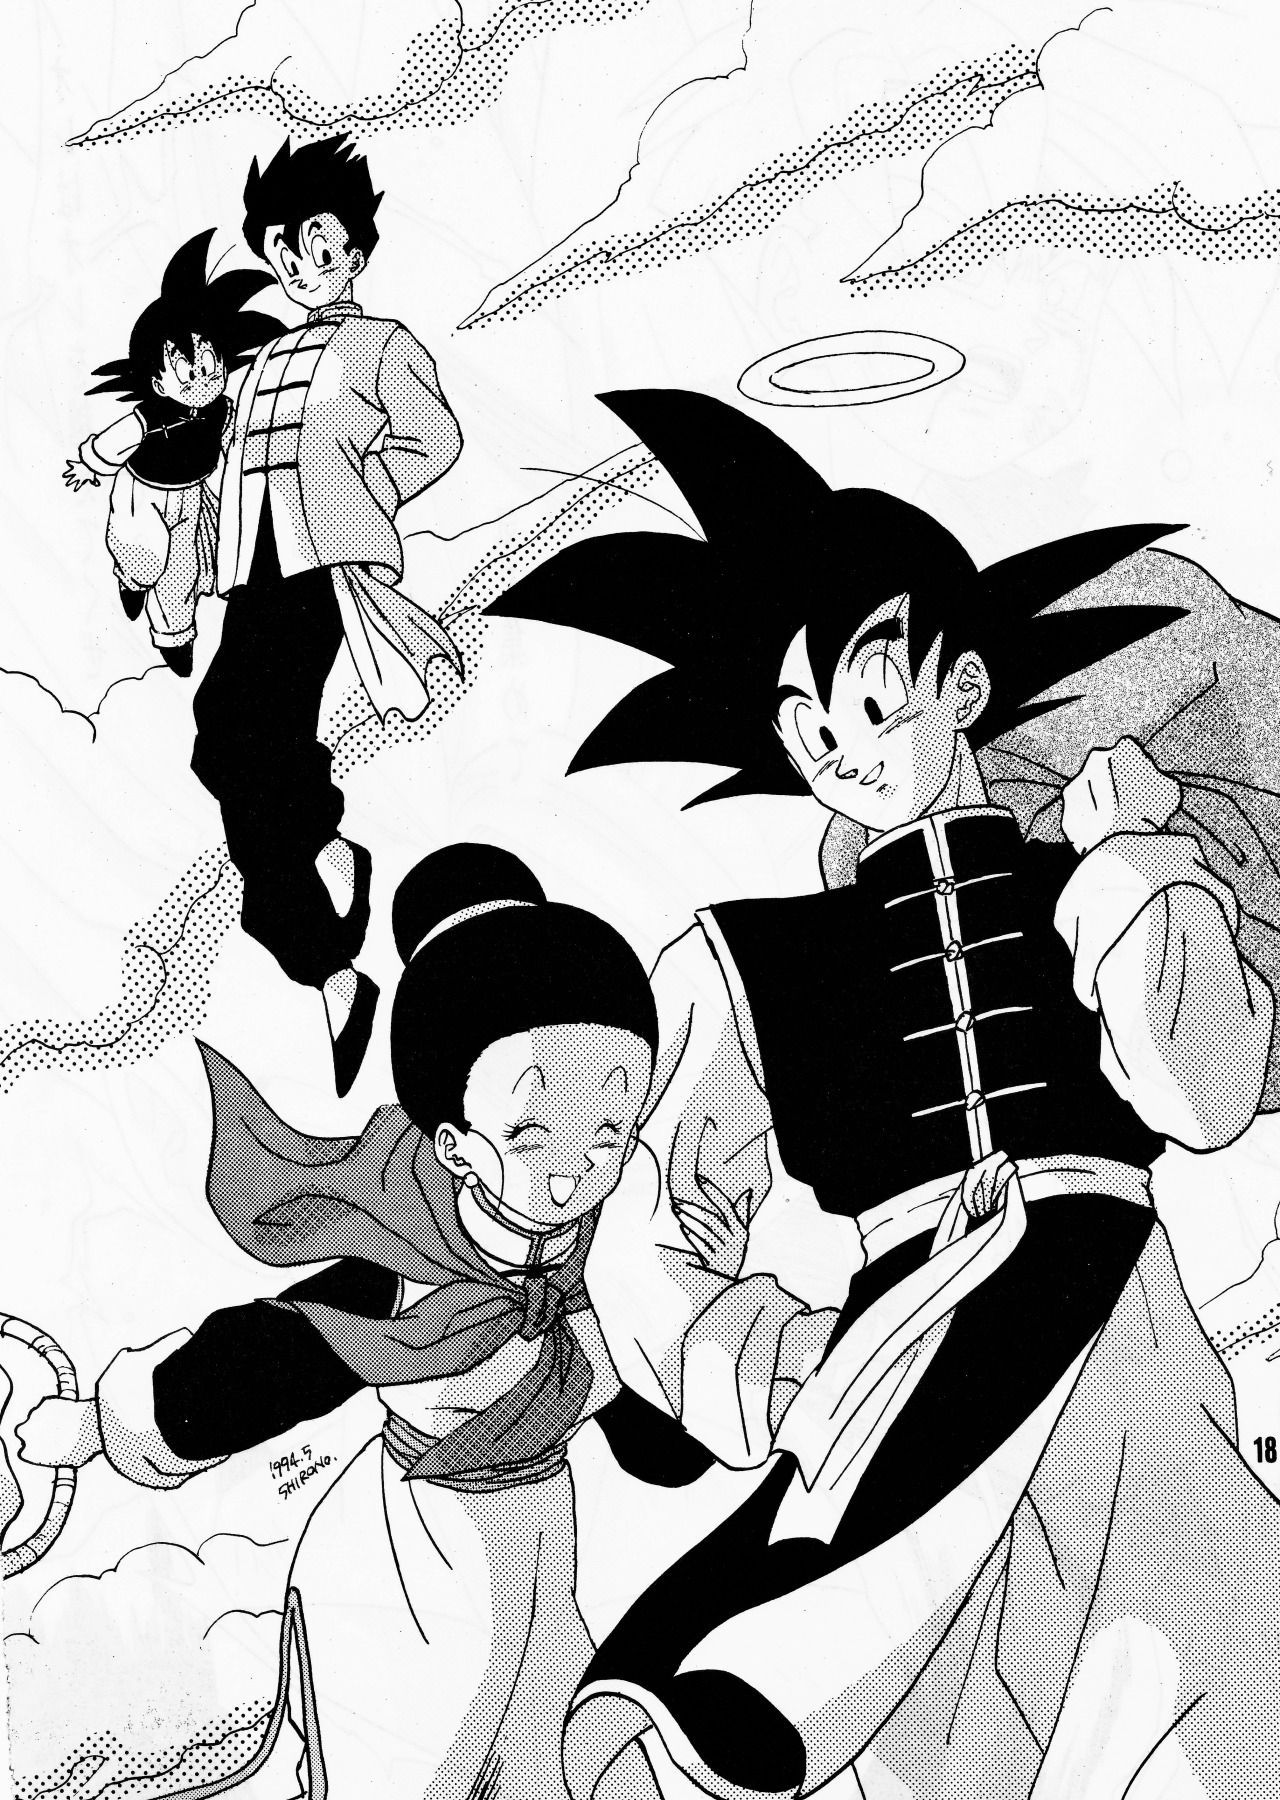 Goku family. Dragon ball z, Dragon ball artwork, Dragon ball goku